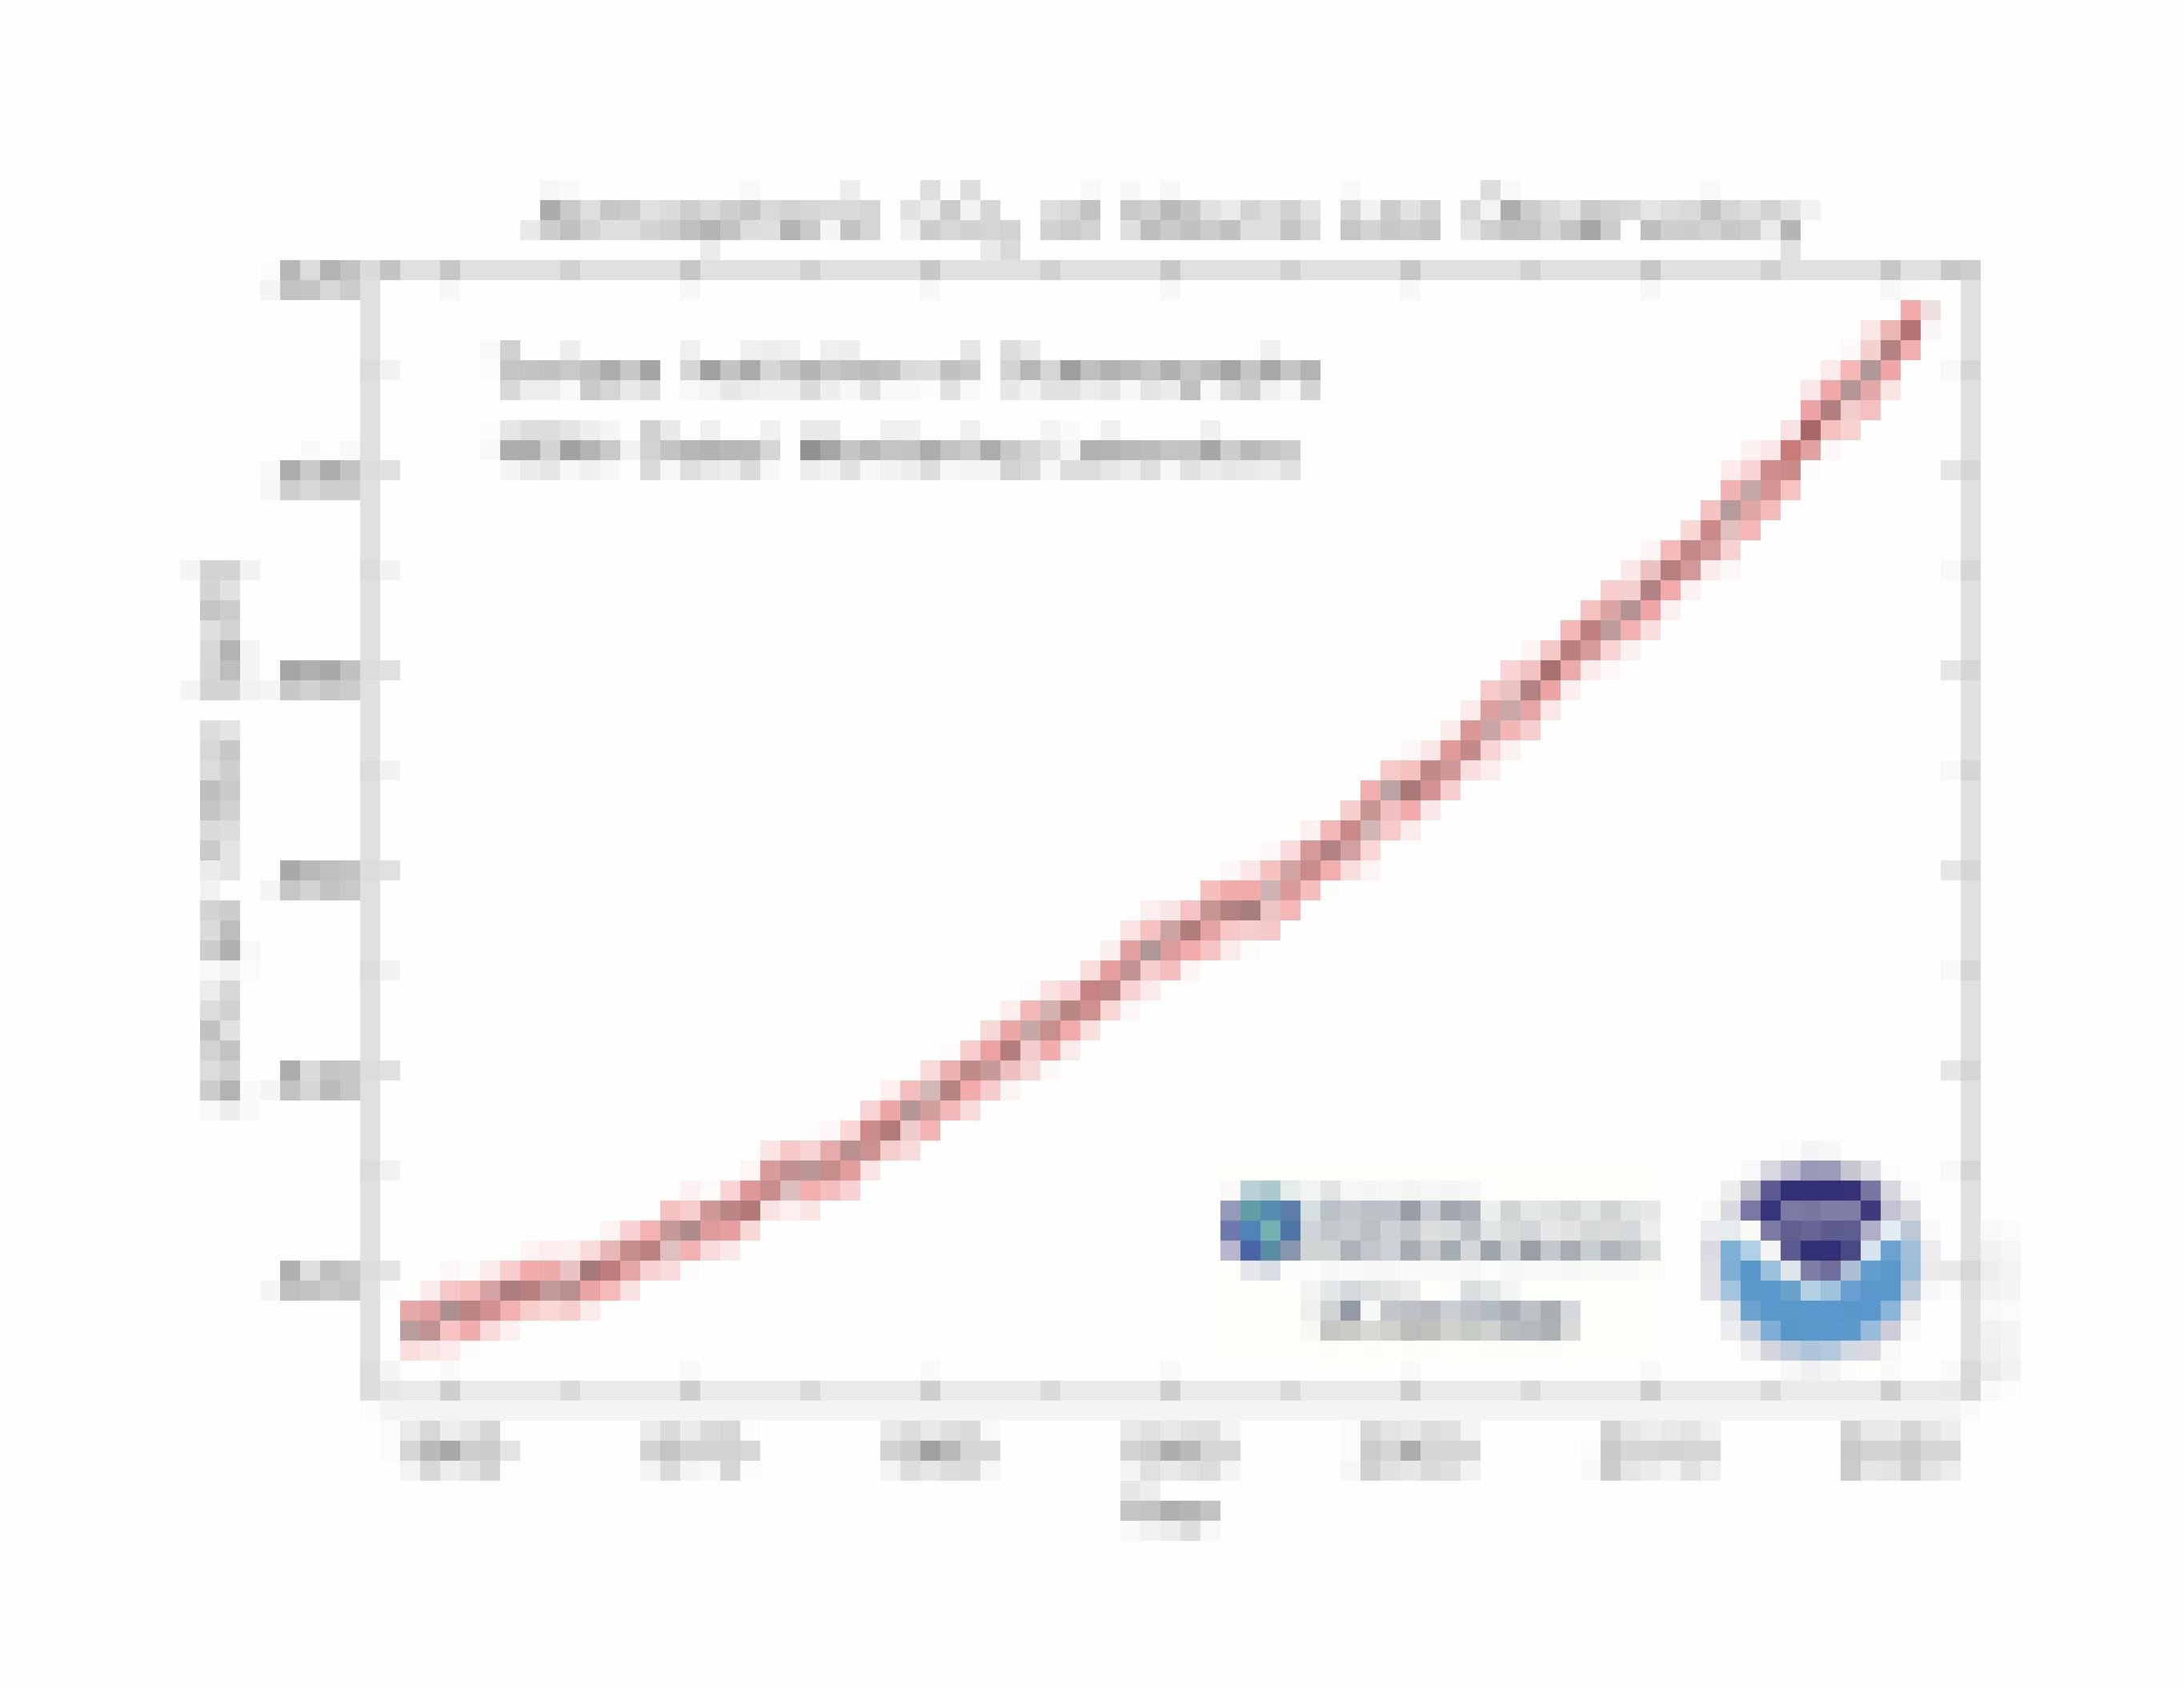 CO2-Kurve seit 1960, ein stetiger Anstieg von 310ppm nach oben in Richtung von 415 bis 420 ppm heute.